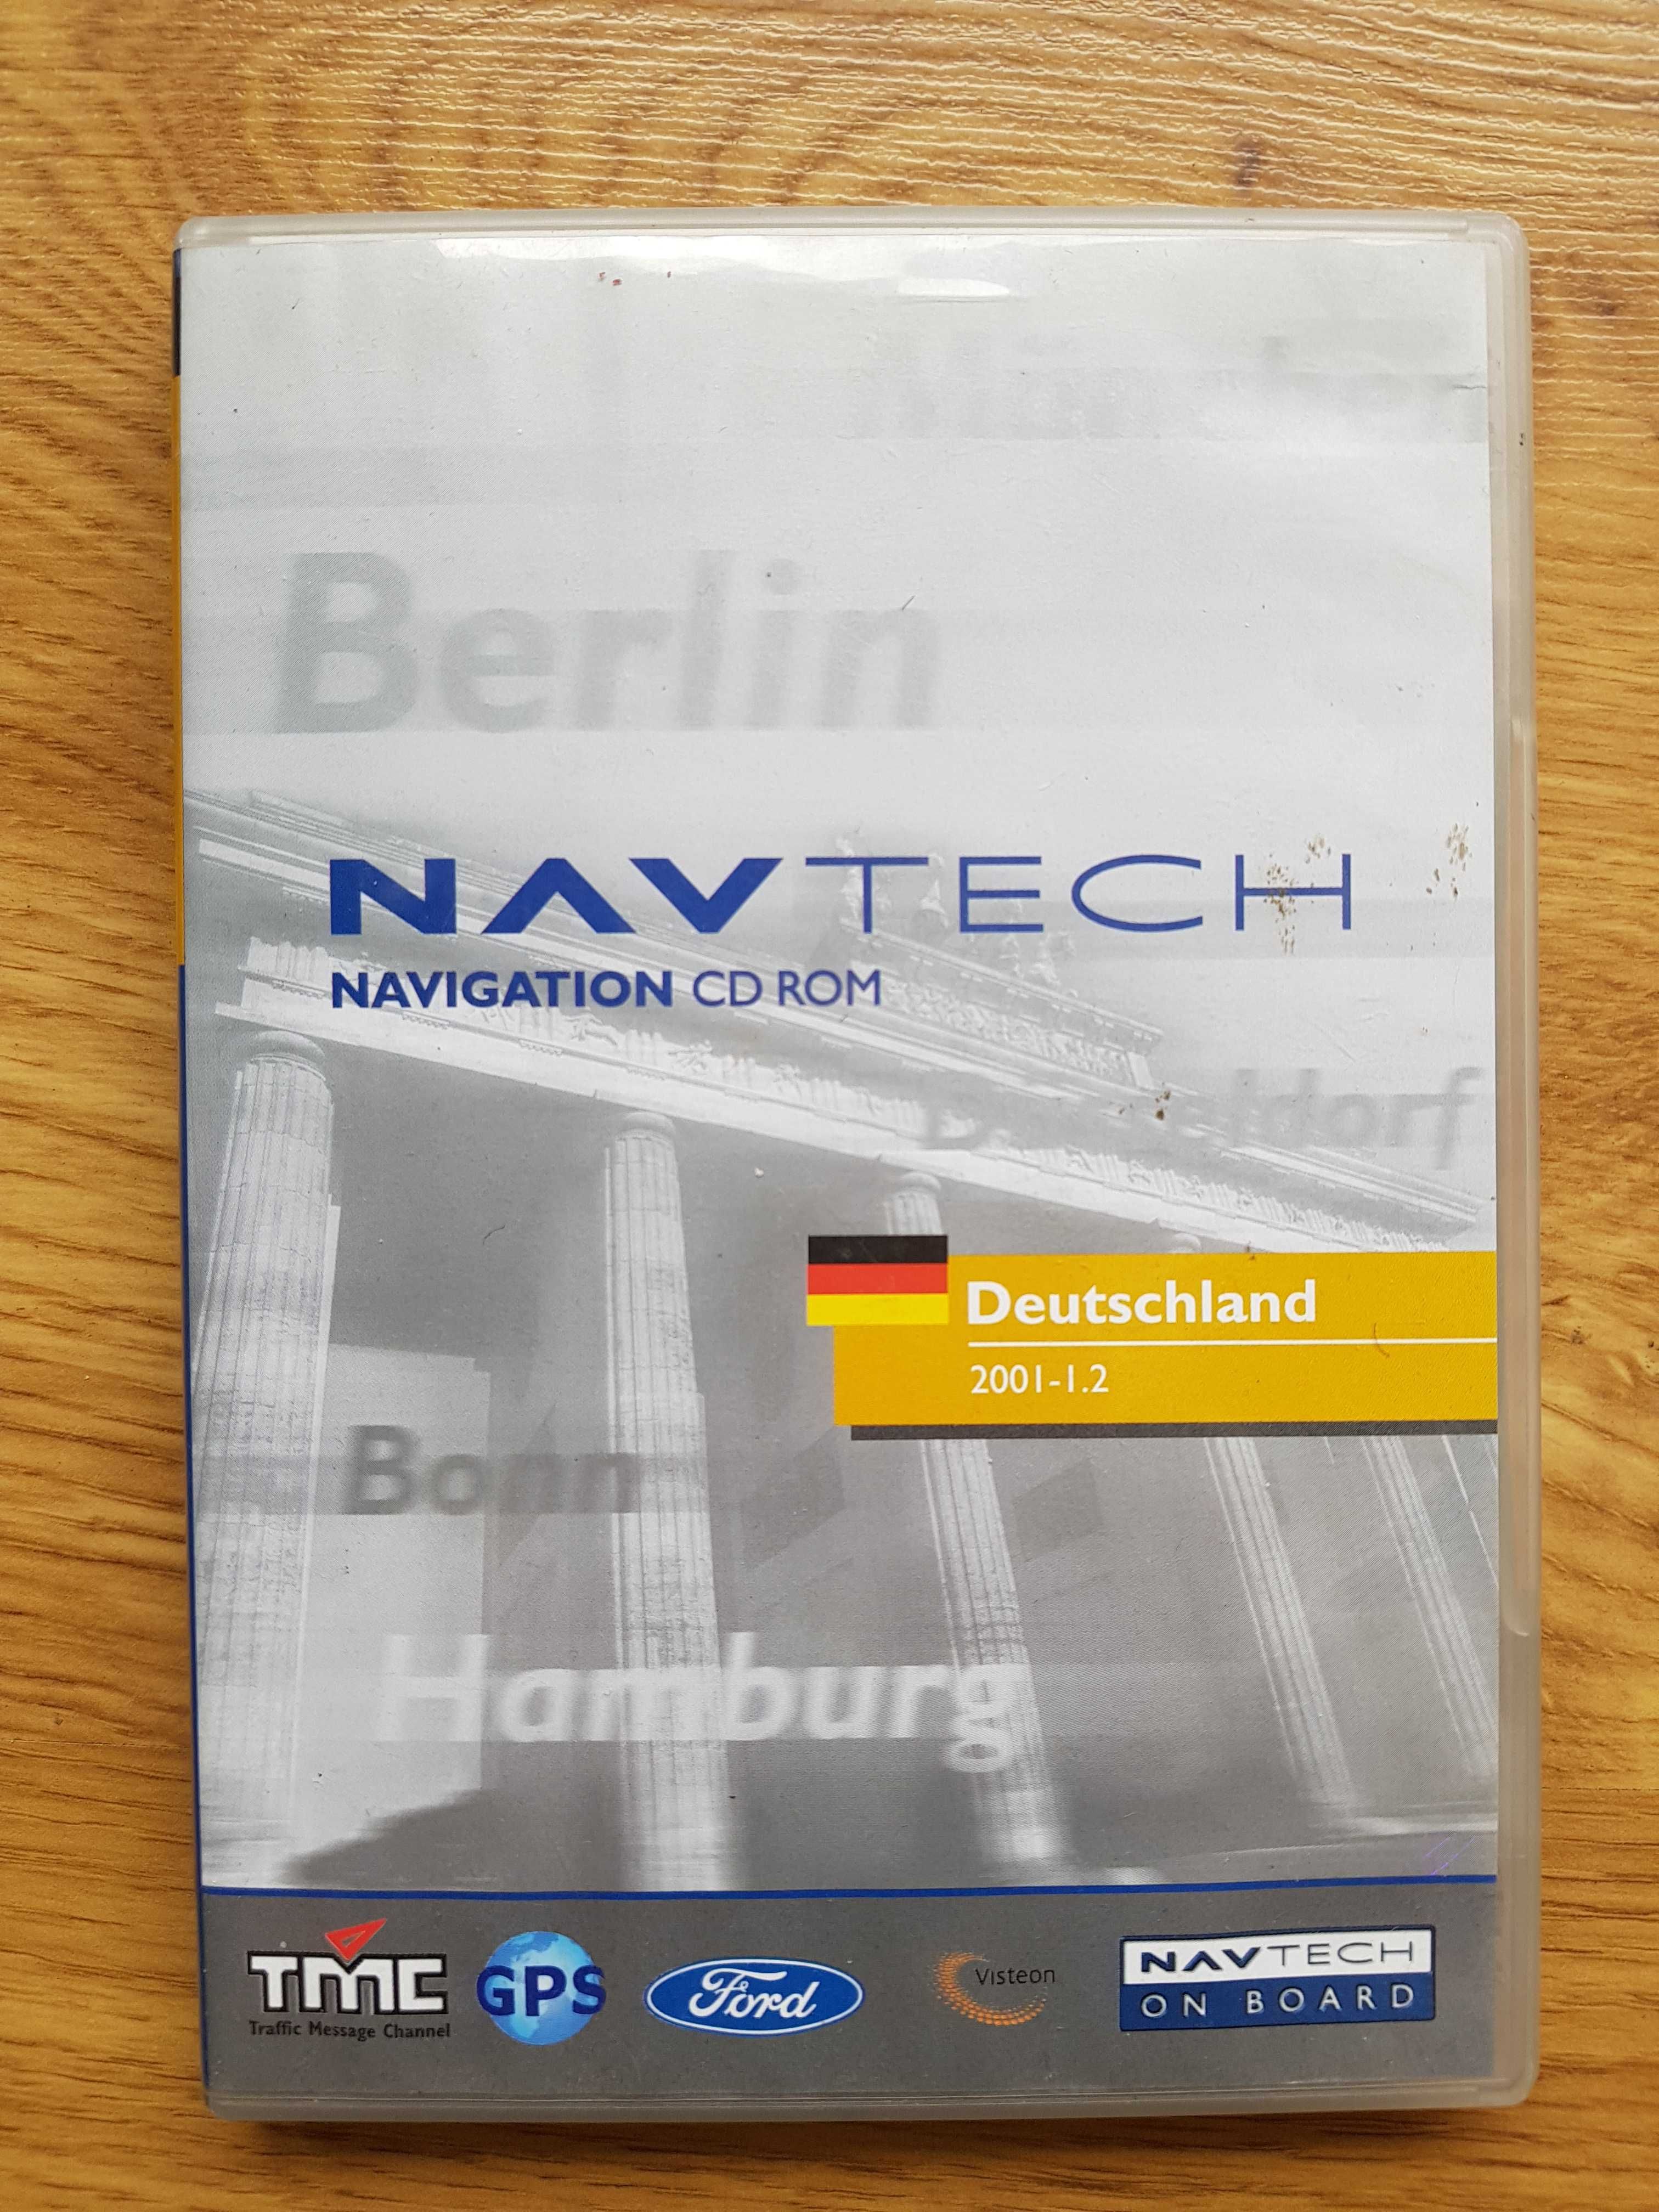 Navtech navigation CD ROM